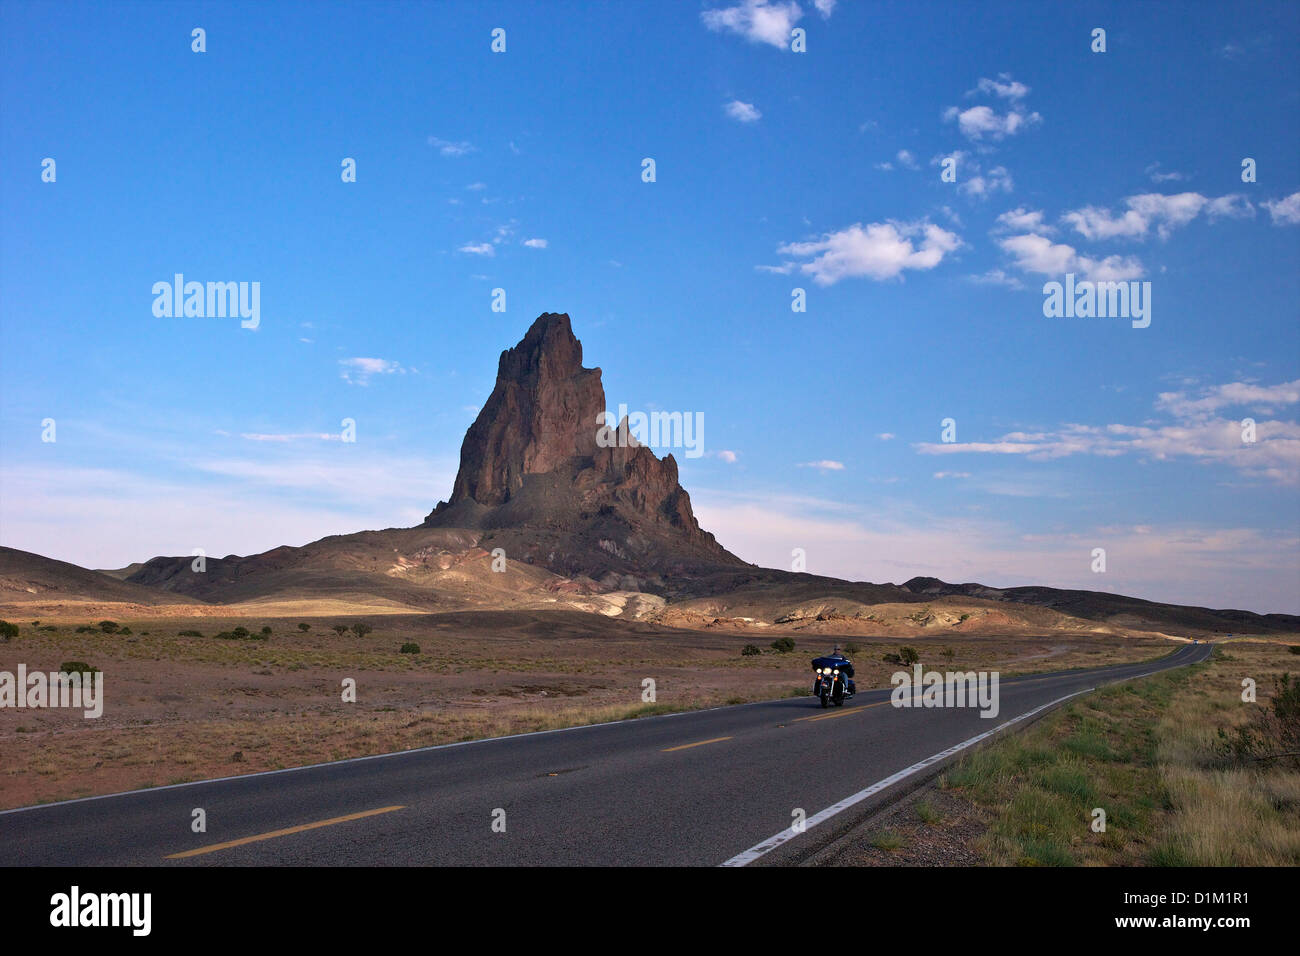 Motociclista rides passato Agathia picco o El Capitan, vicino alla Monument Valley, in Arizona Highway 163, Arizona, Stati Uniti d'America Foto Stock